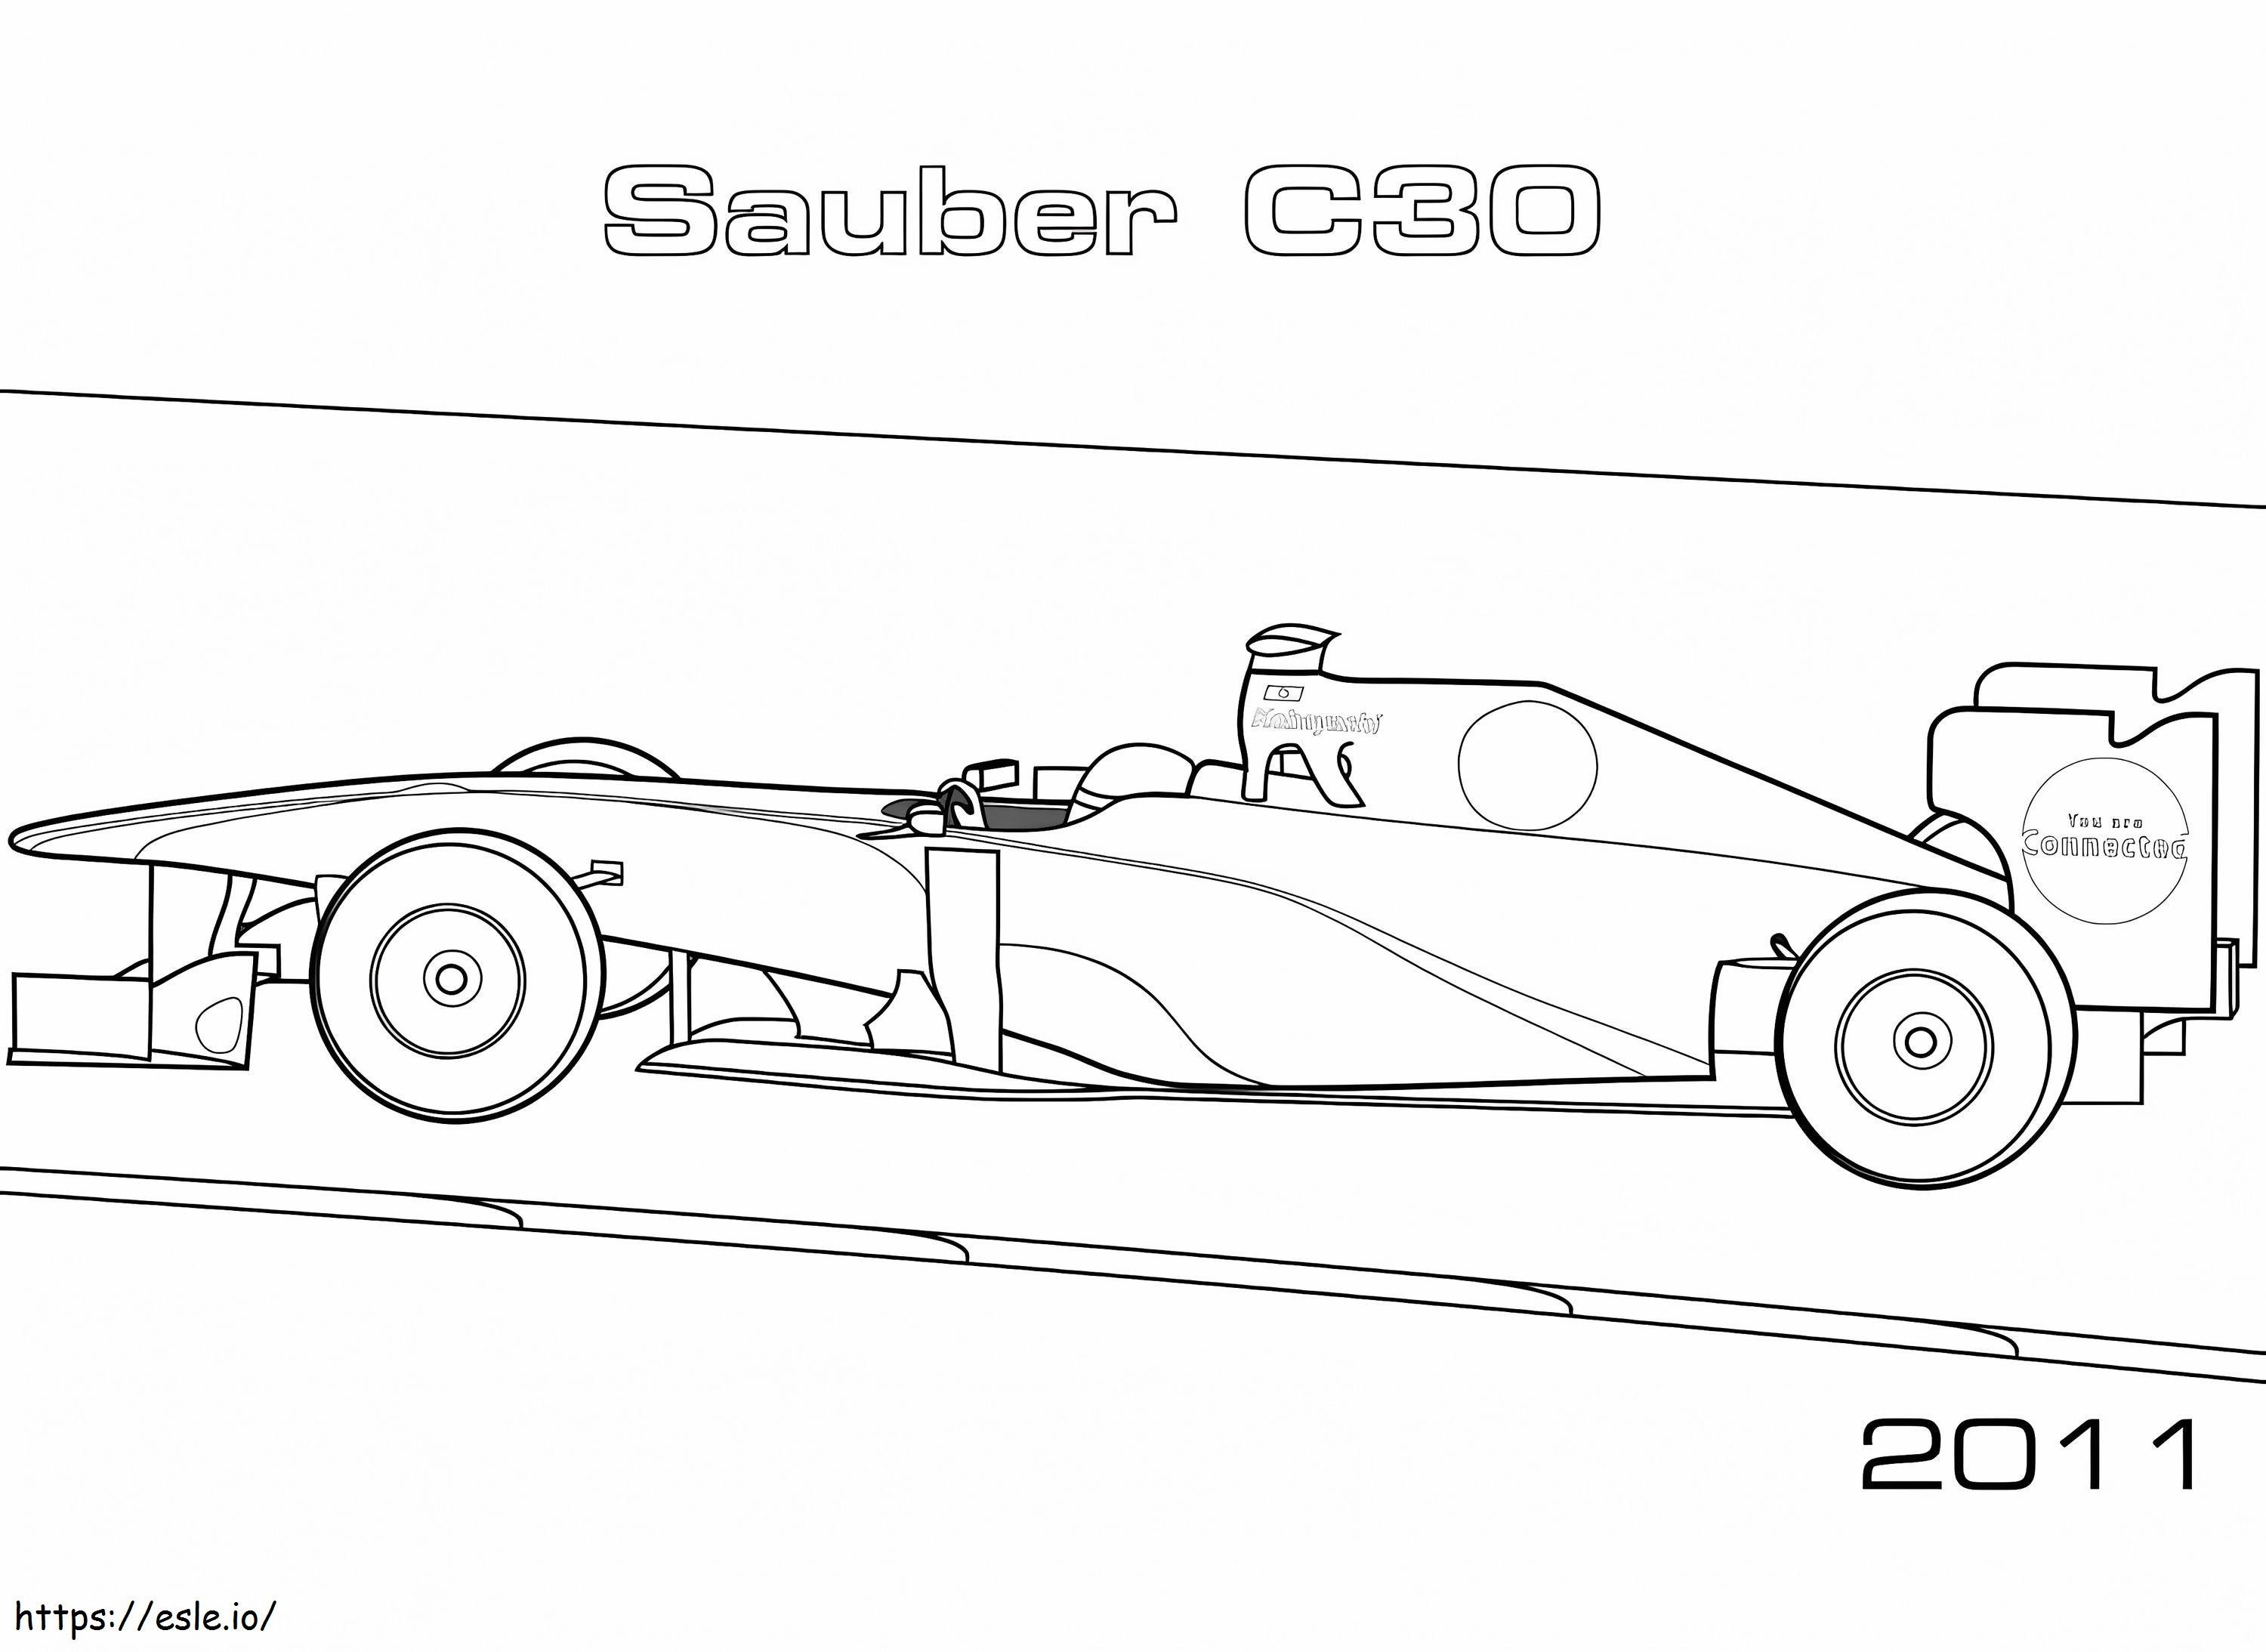 Desenho de Carro de F1 para Colorir - Colorir.com